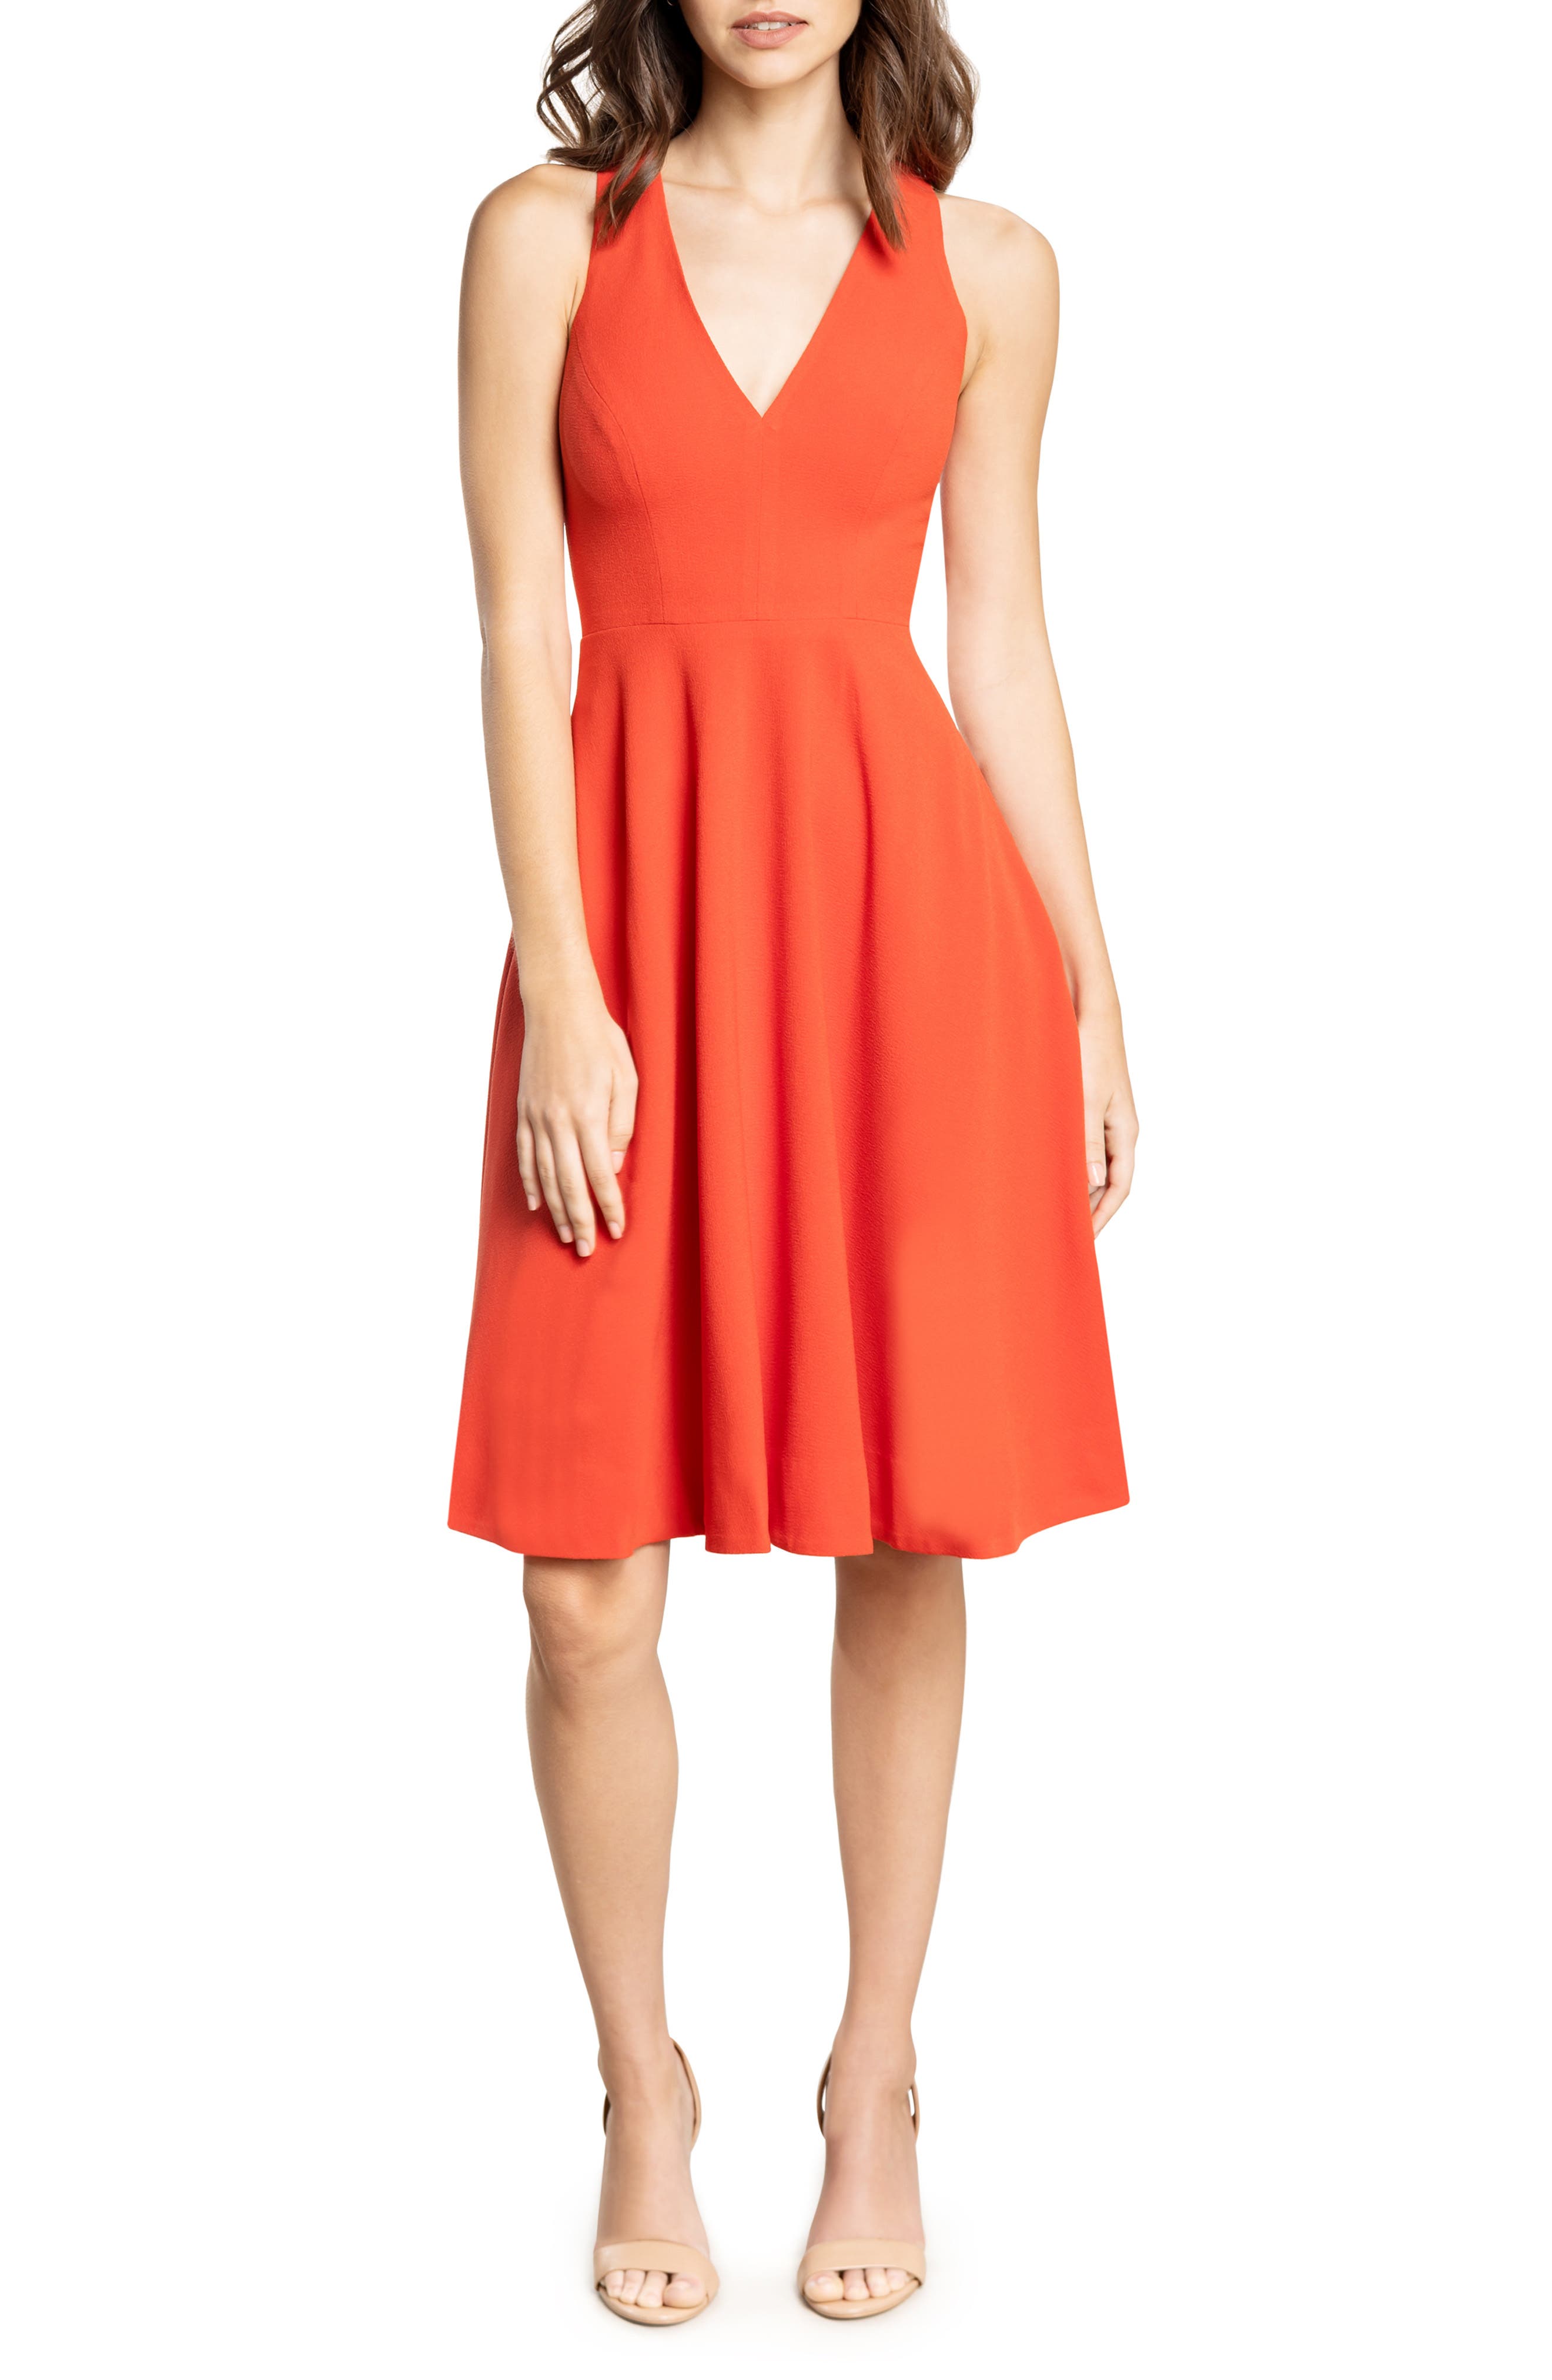 Orange Cocktail Dresses ☀ Party Dresses ...